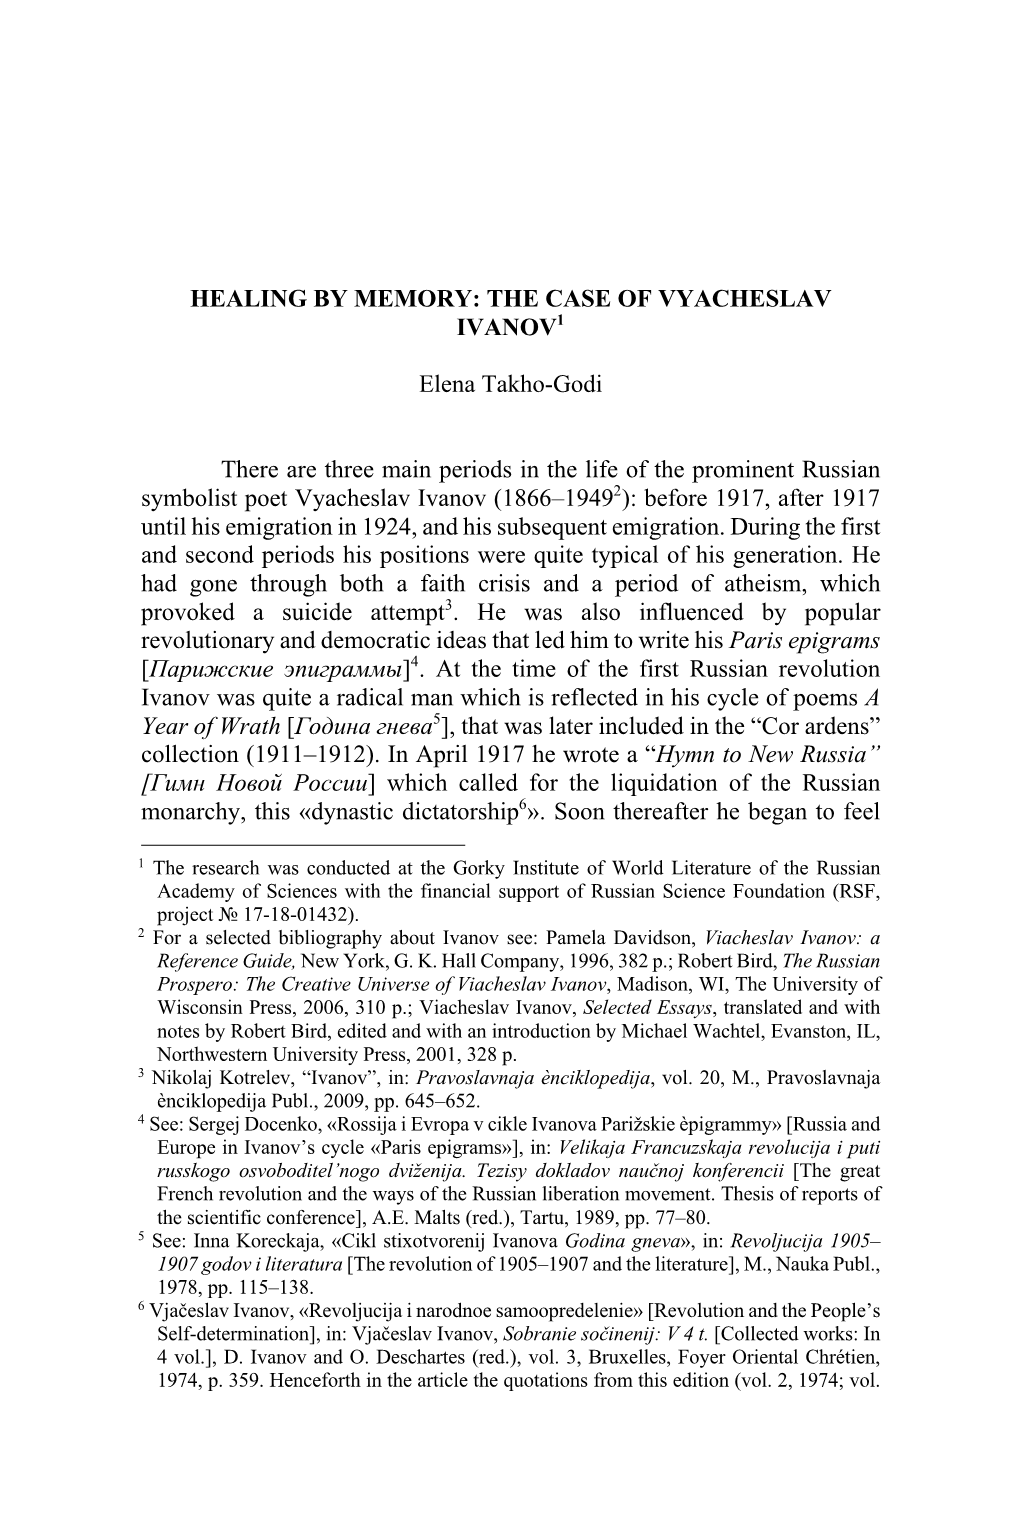 THE CASE of VYACHESLAV IVANOV1 Elena Takho-Godi There